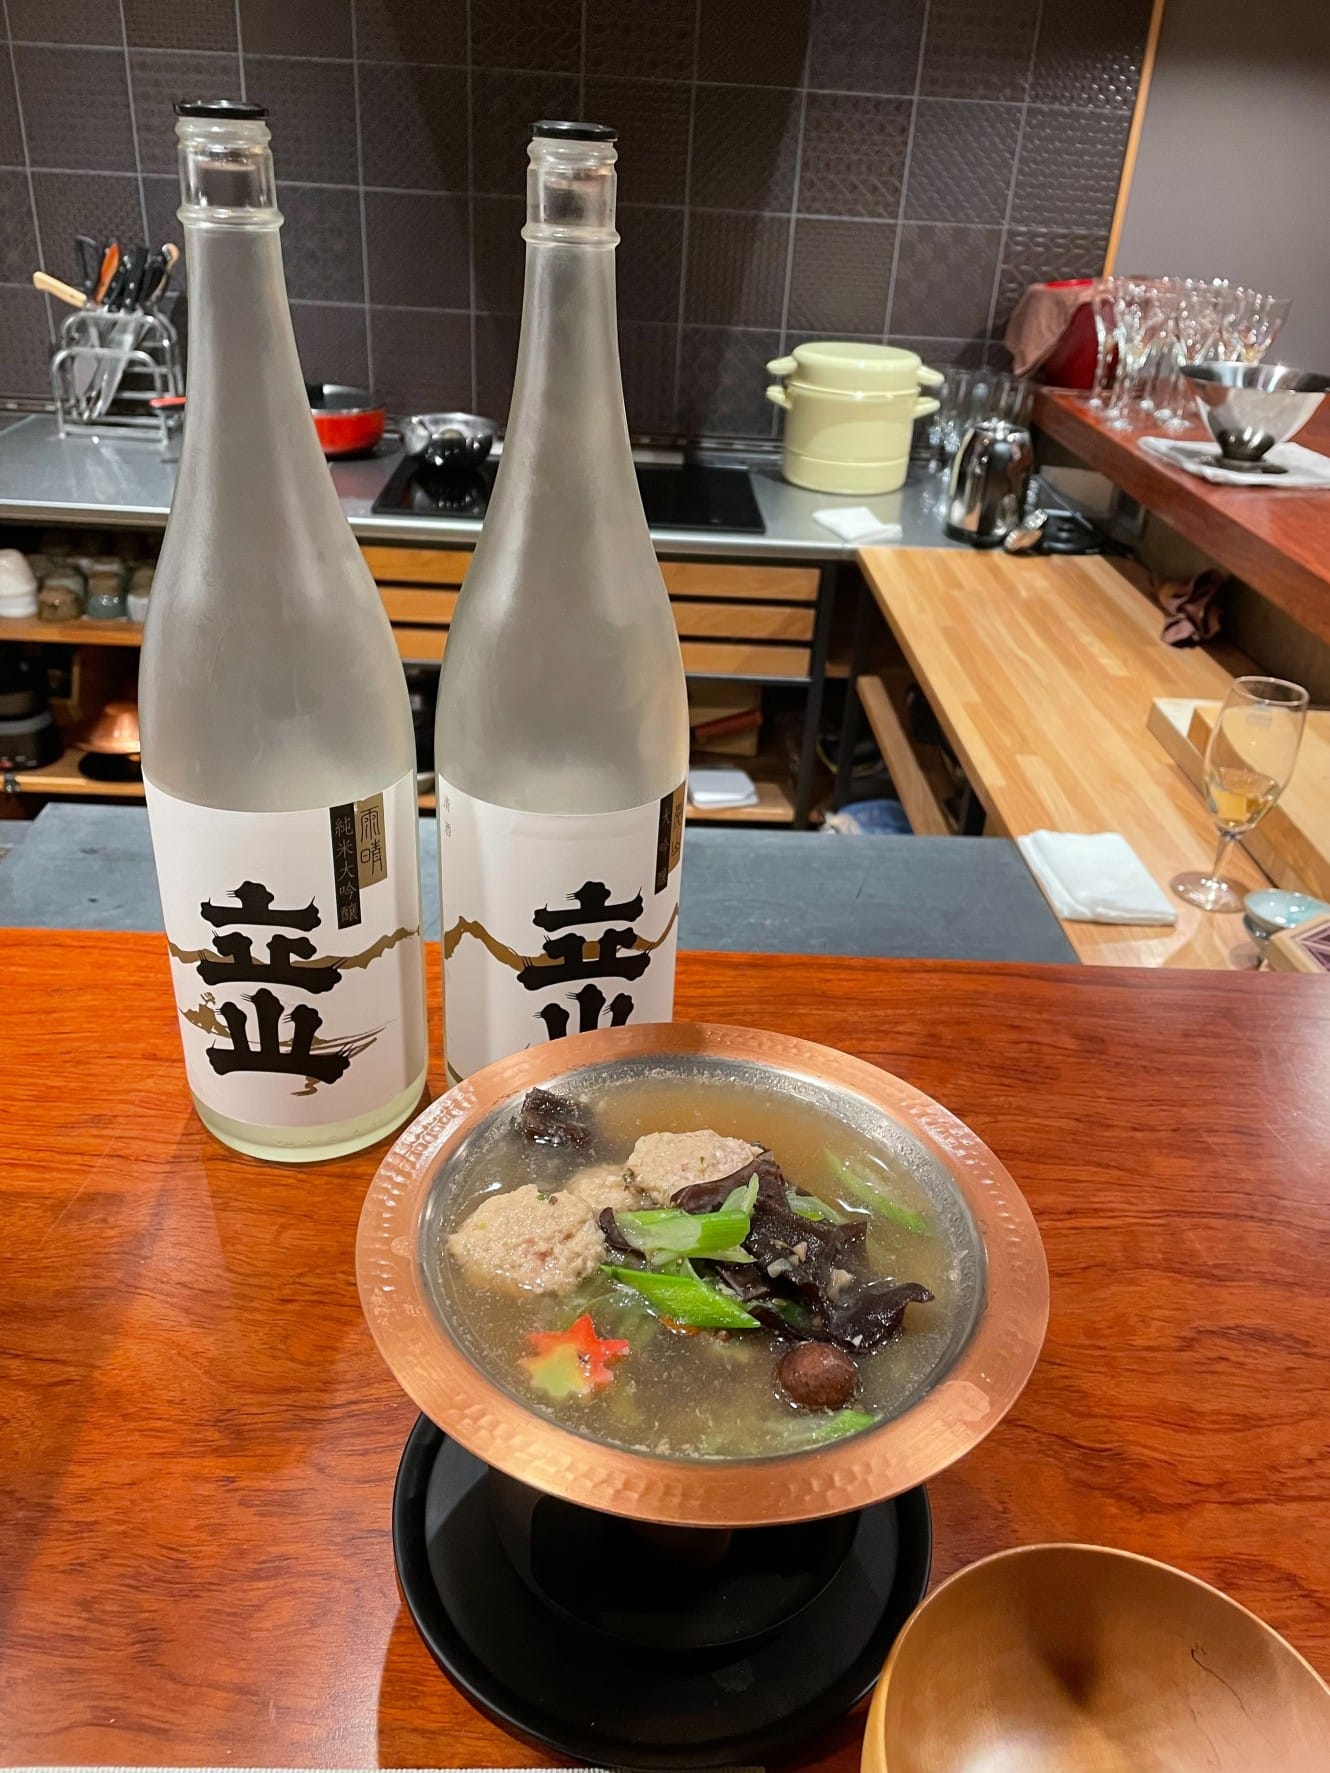 寒波到来!温まりませんか?日本酒と鍋。日本式冬の一杯!